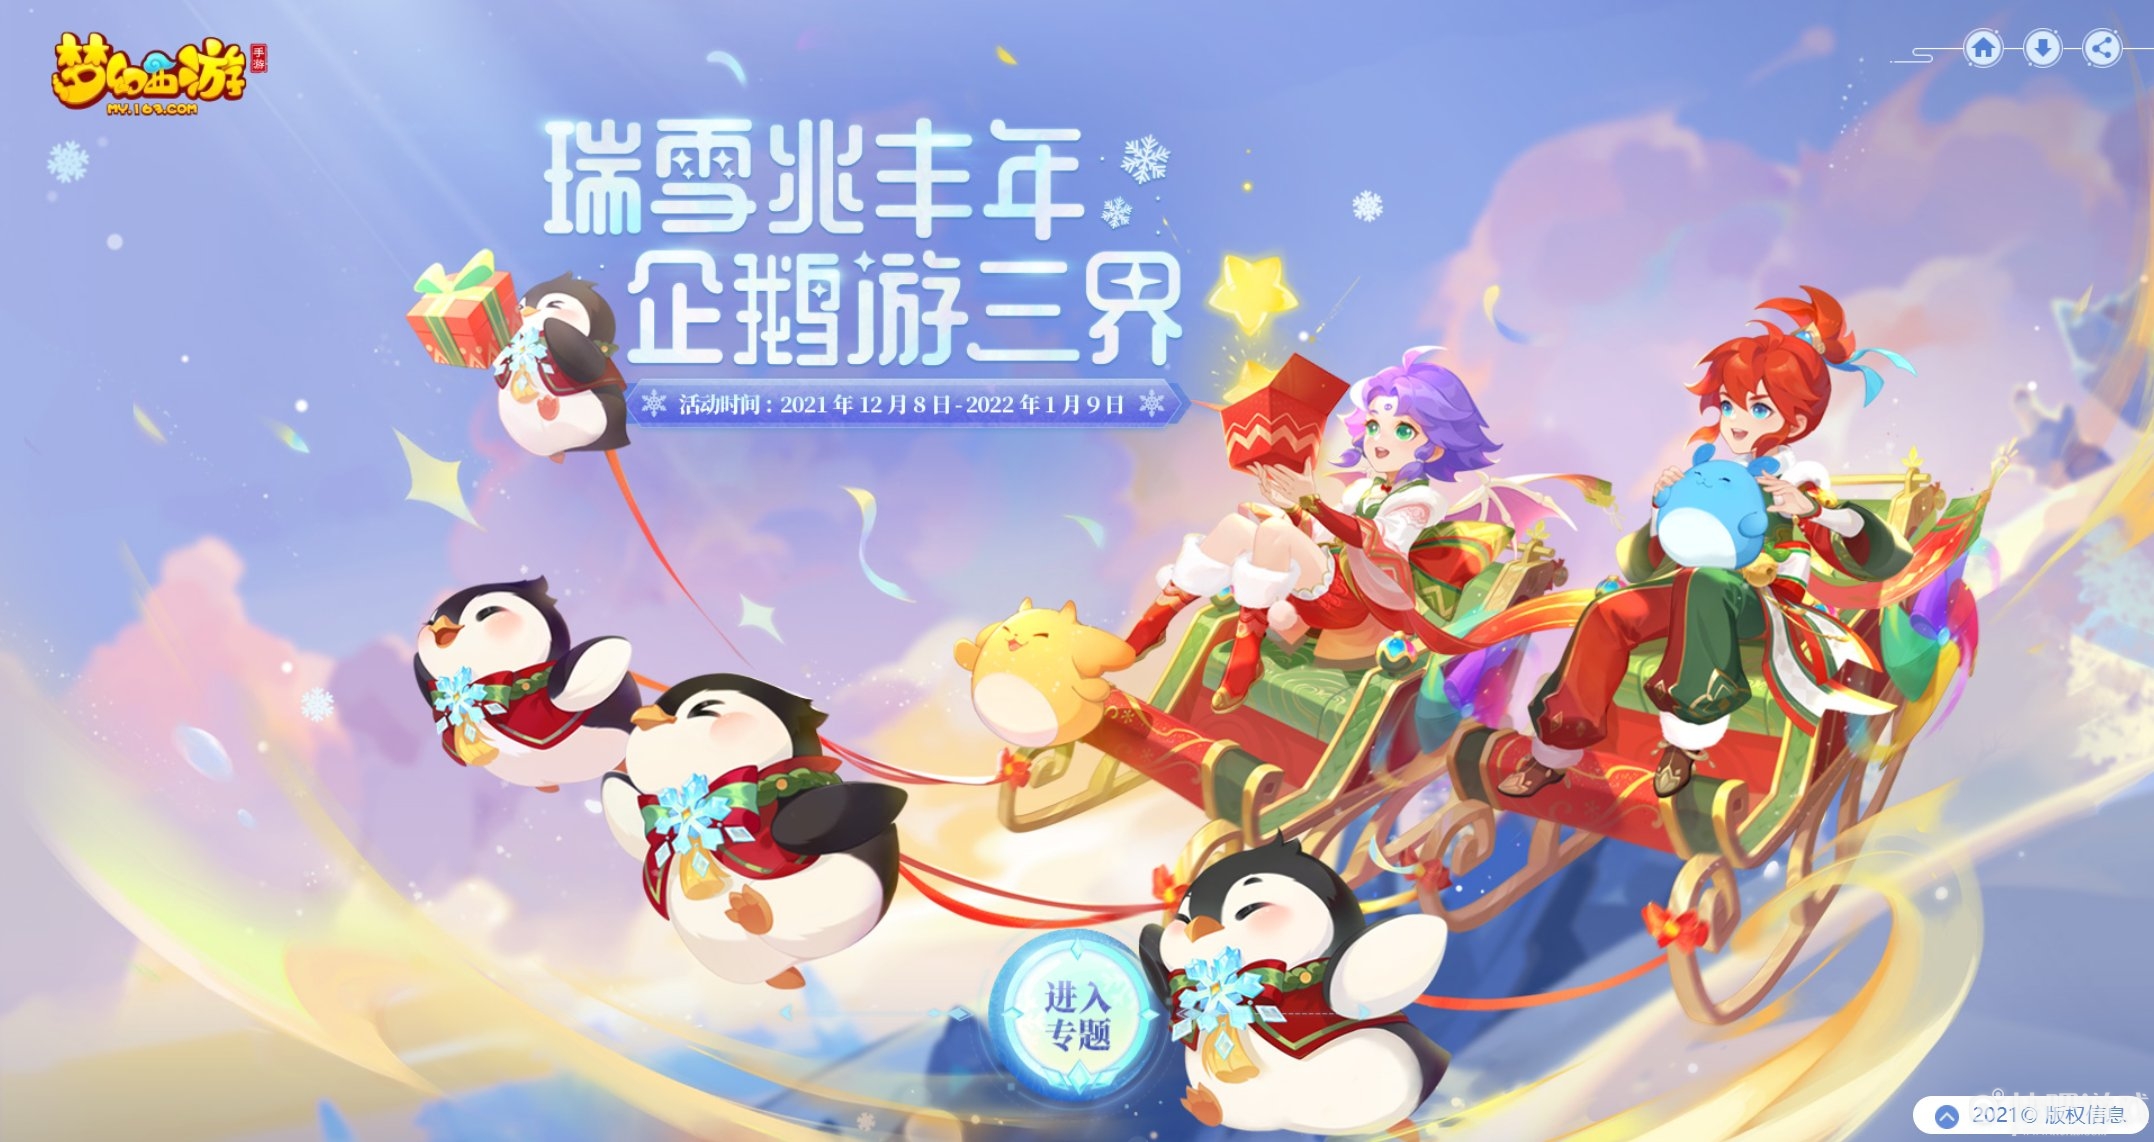 三界年末大狂欢，《梦幻西游》手游2021冰雪嘉年华欢乐来袭！